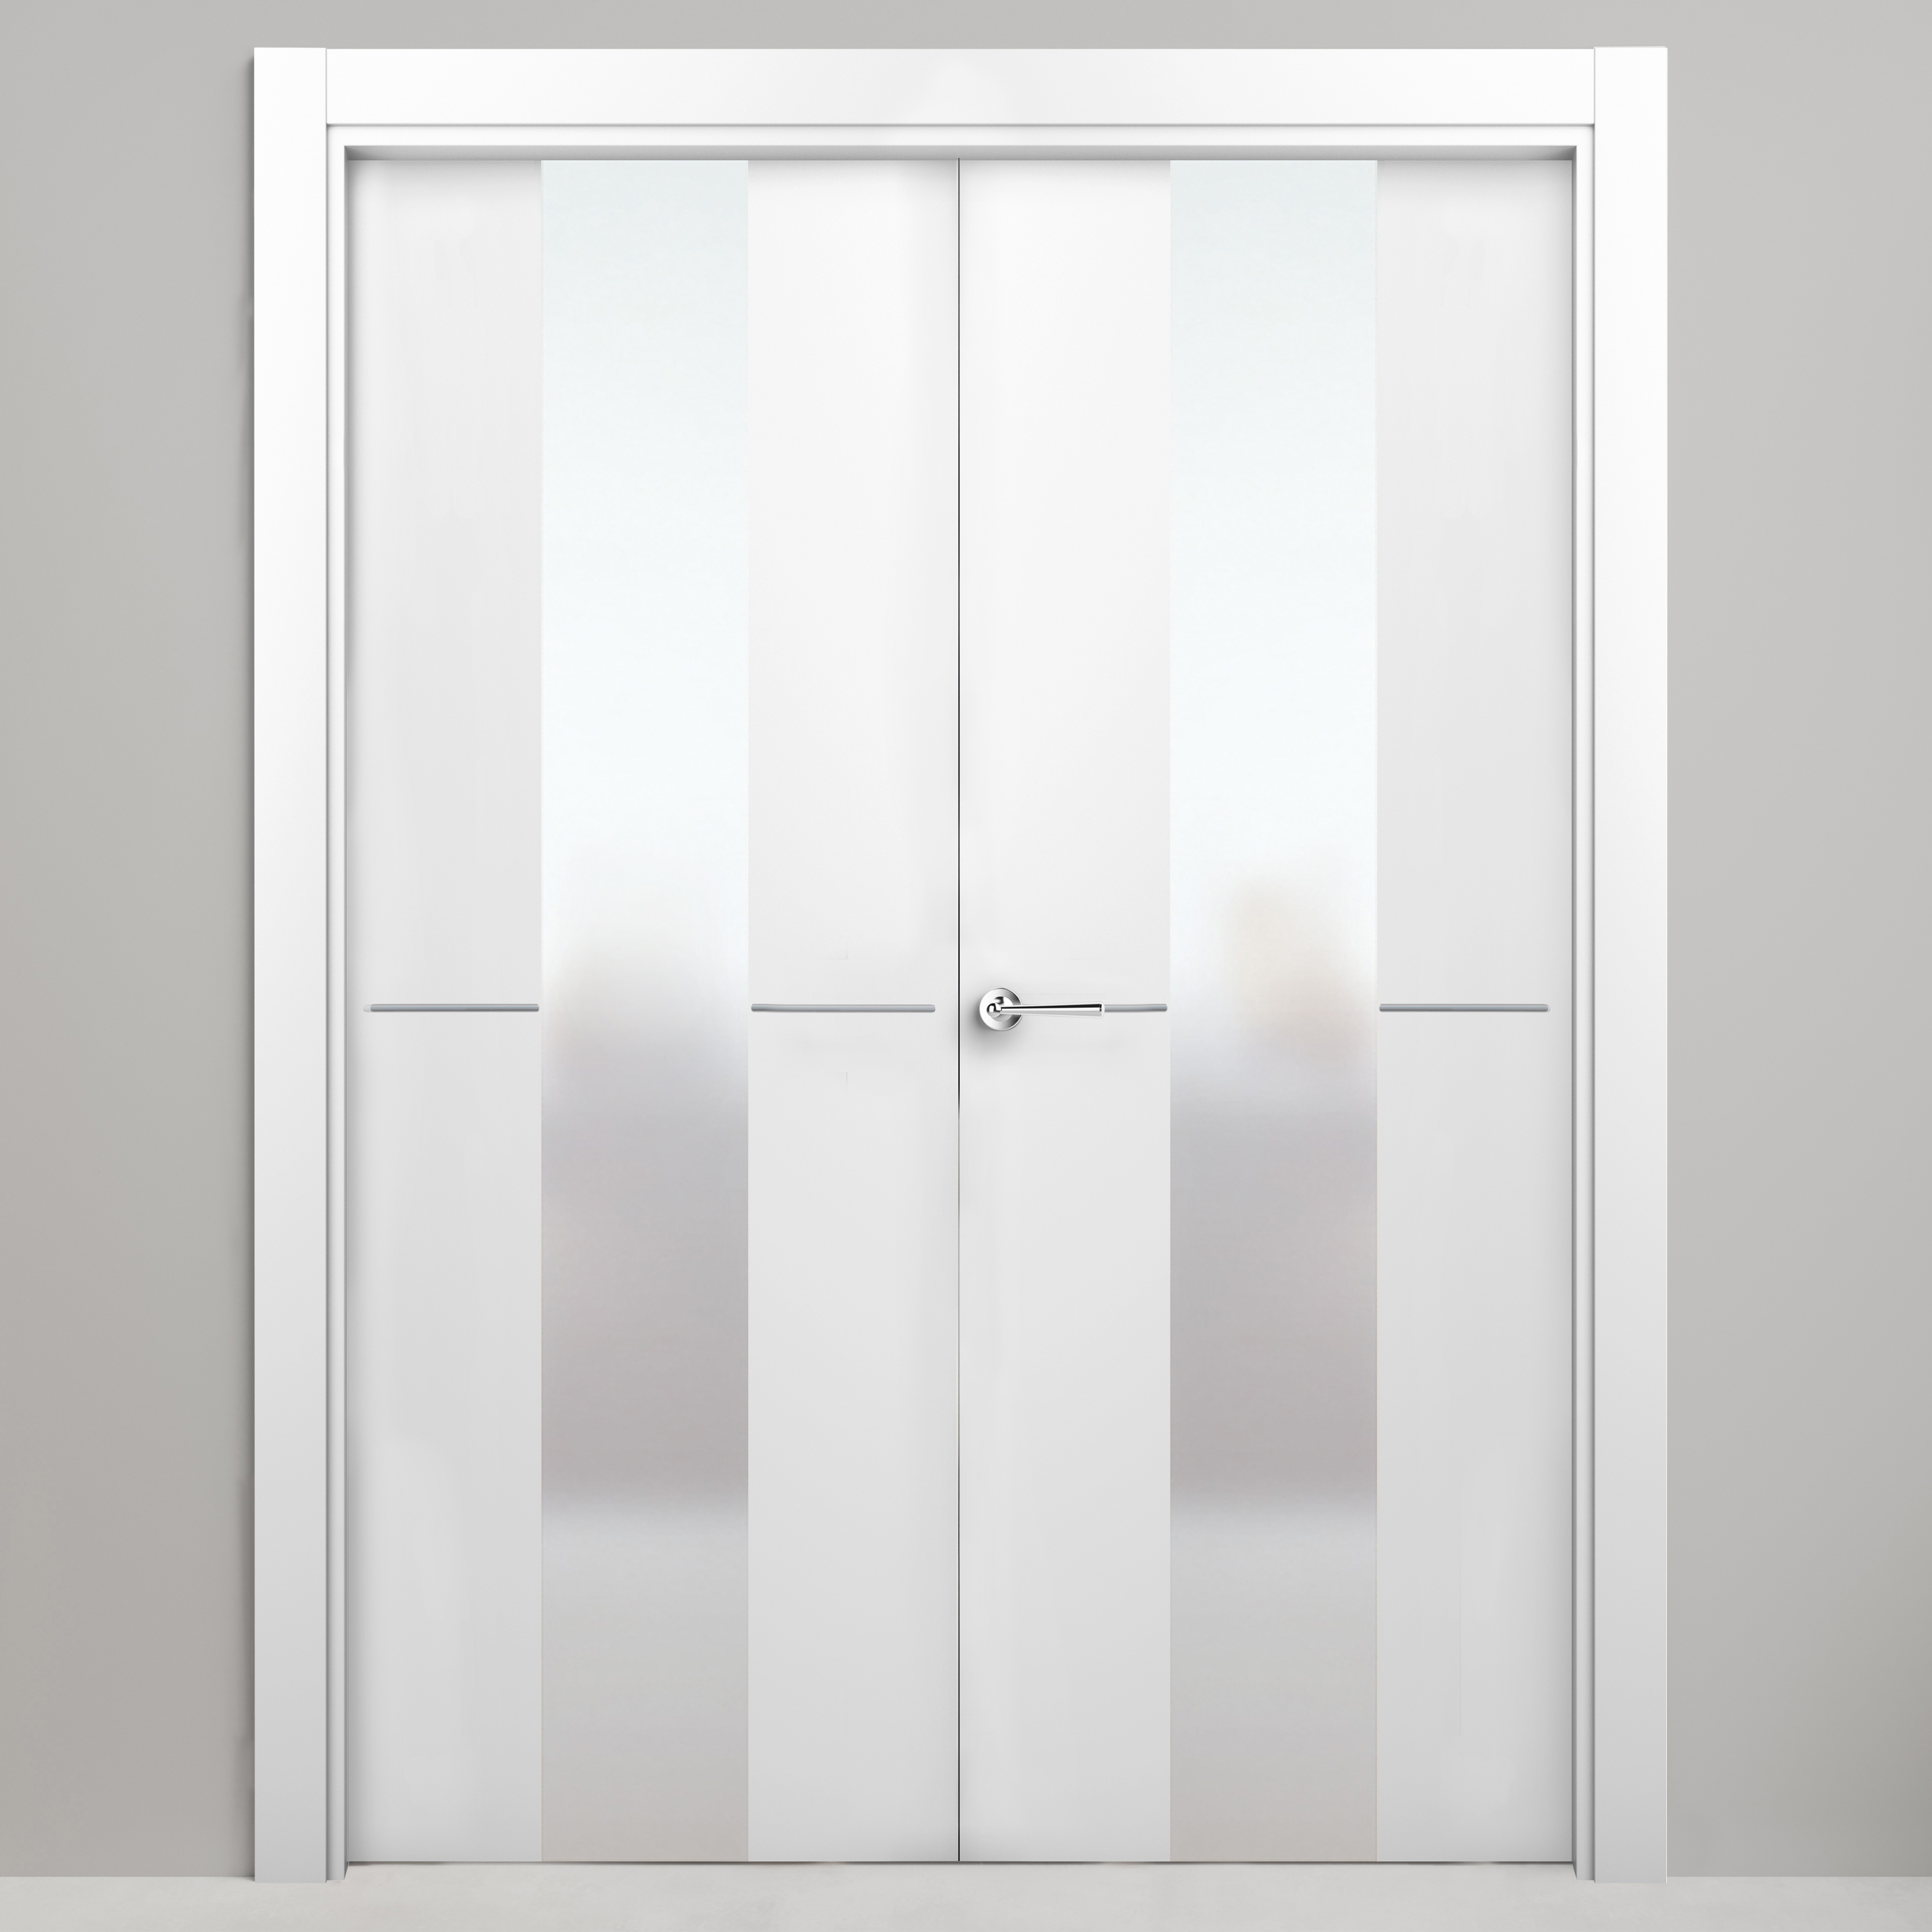 Puerta abatible paris blanca premium apertura derecha de 125 cm